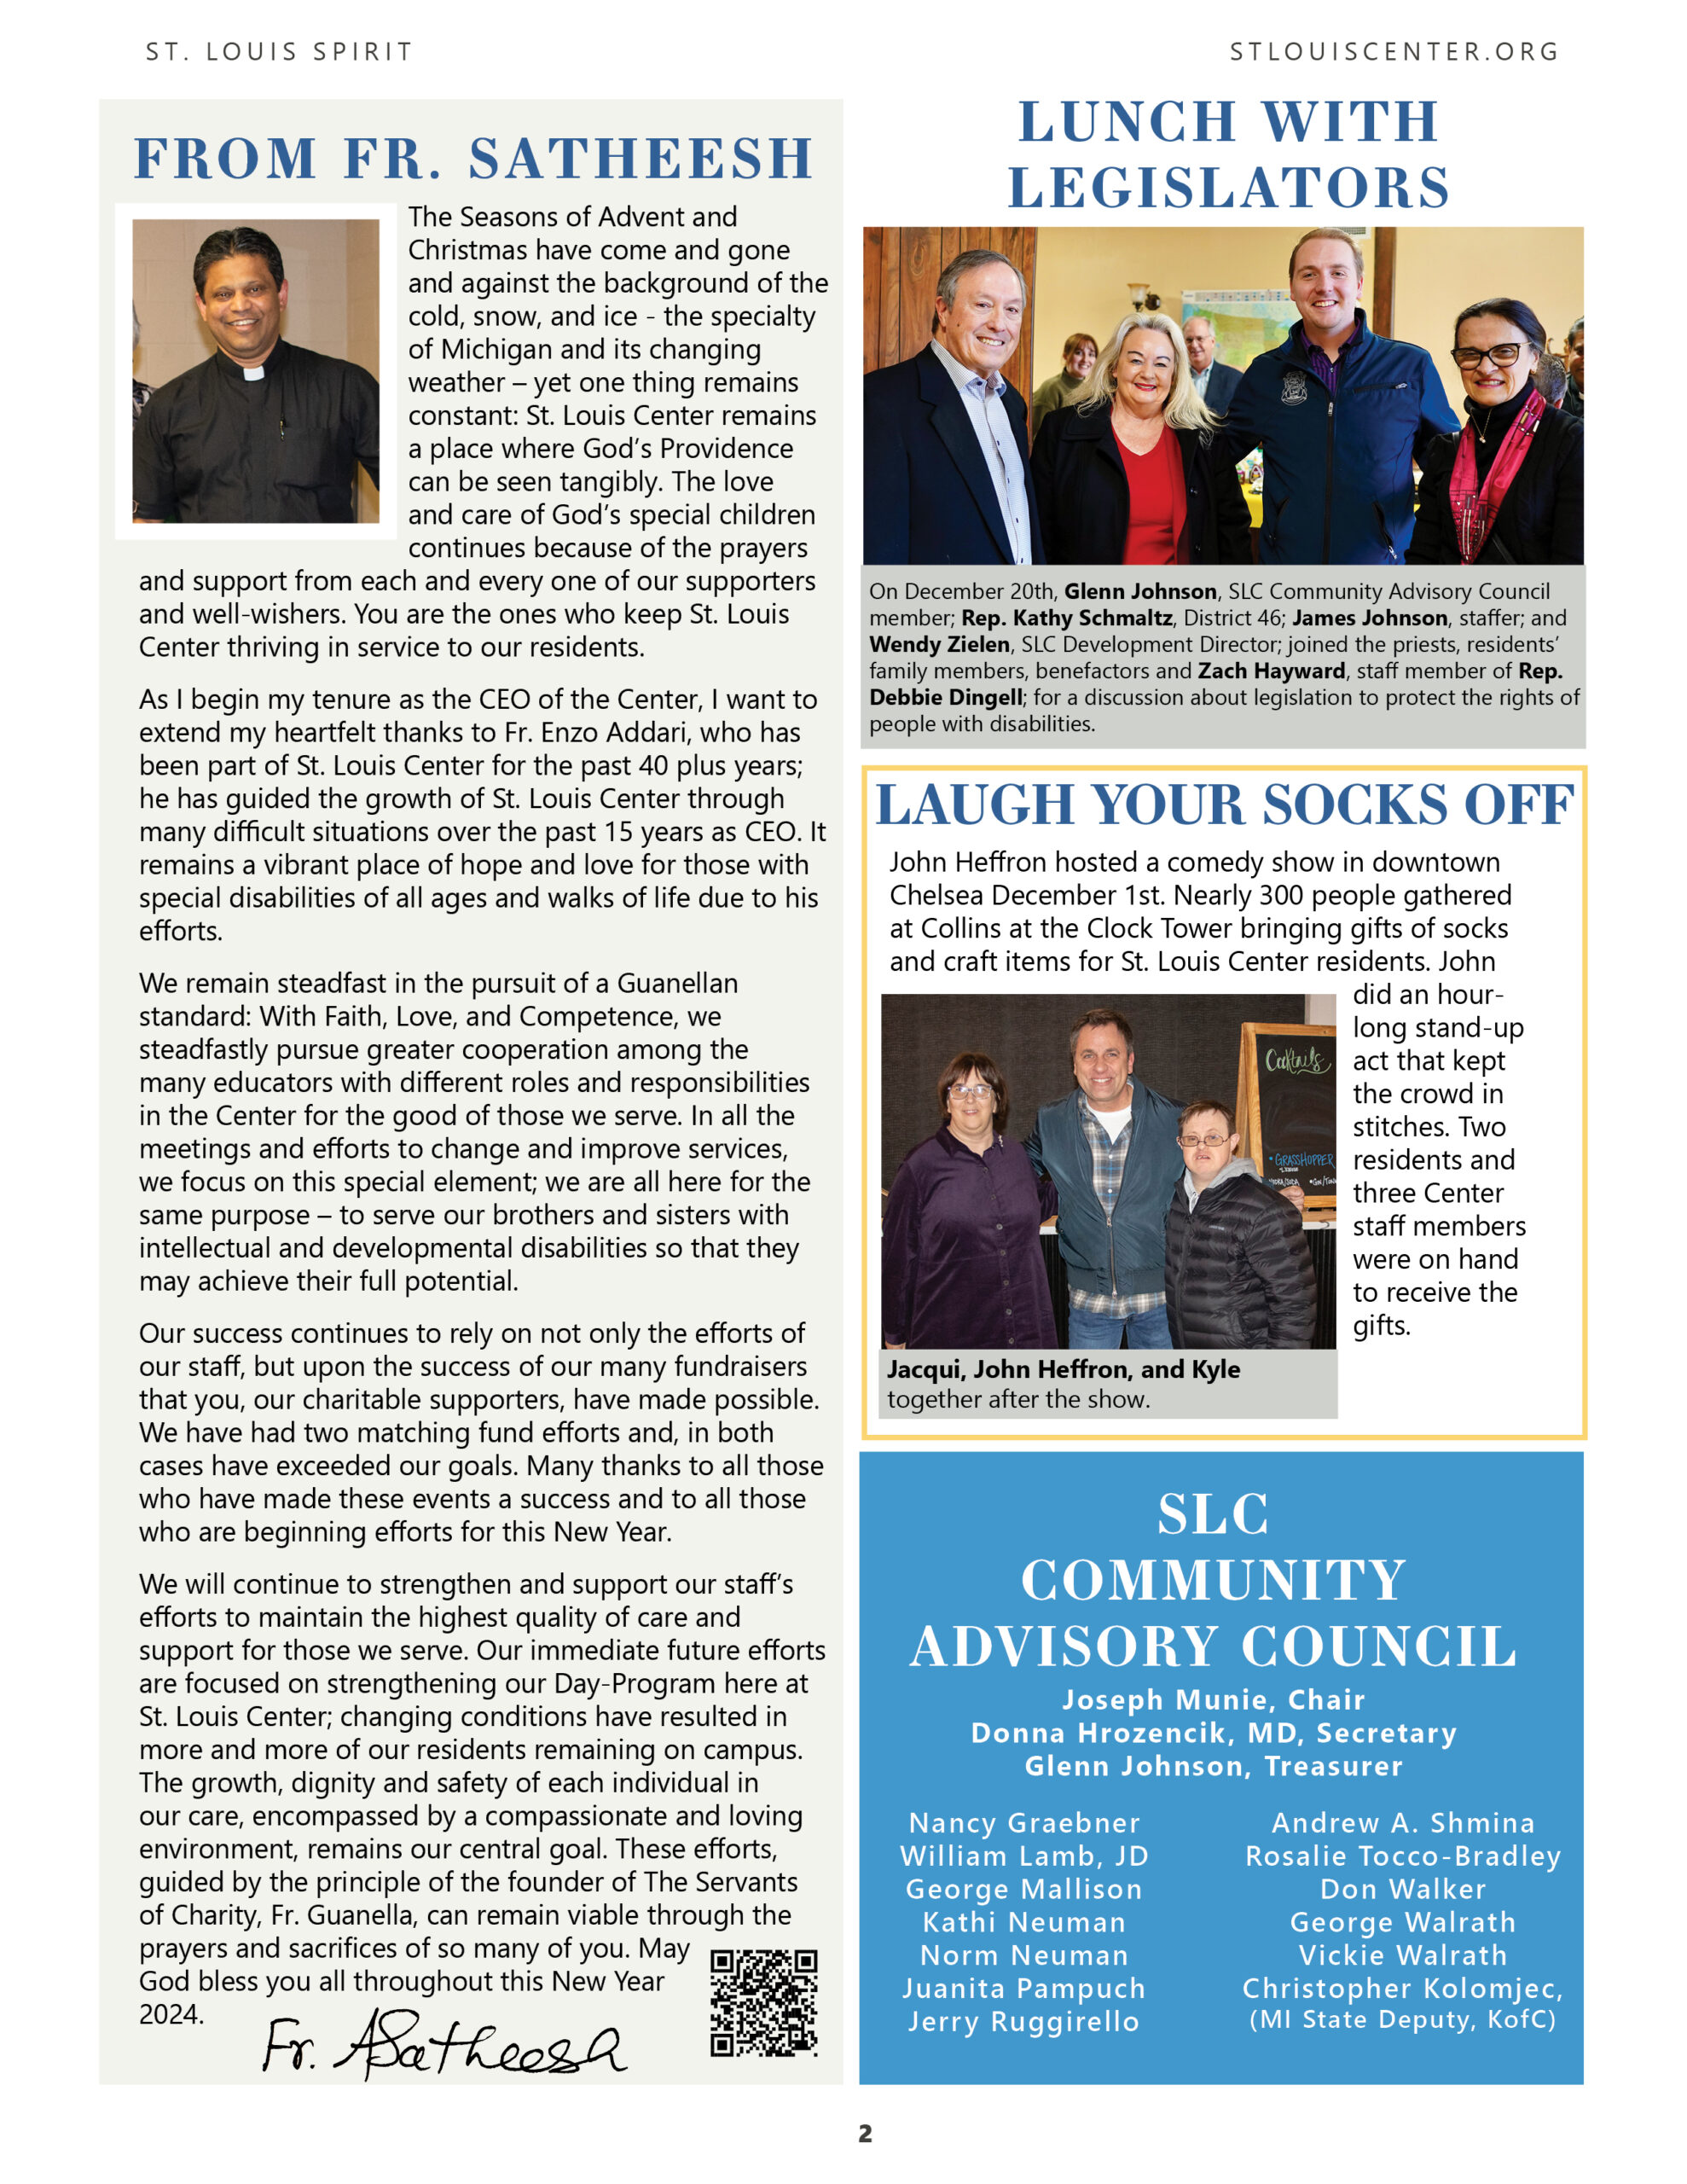 St. Louis Spirit Newsletter - Winter 2024 page 2